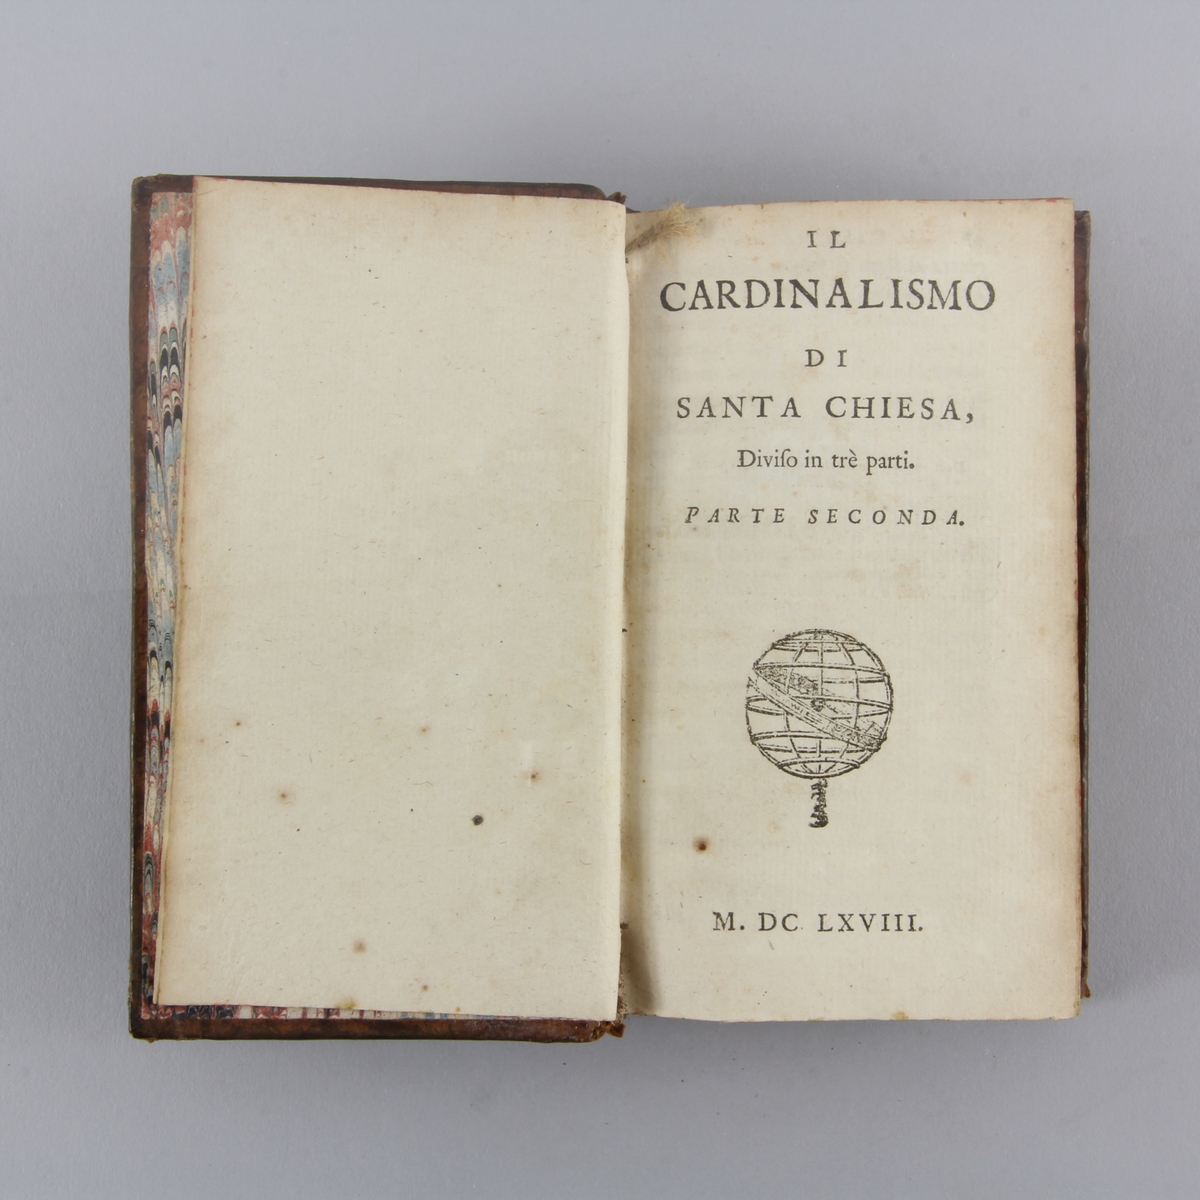 Bok, helfranskt band "Il cardinalismo di Santa Chiesa", del 2. Skinnband med guldpräglad rygg i fem upphöjda bind, marmorerat papper på pärmens insida. Rödstänkt skuret snitt.